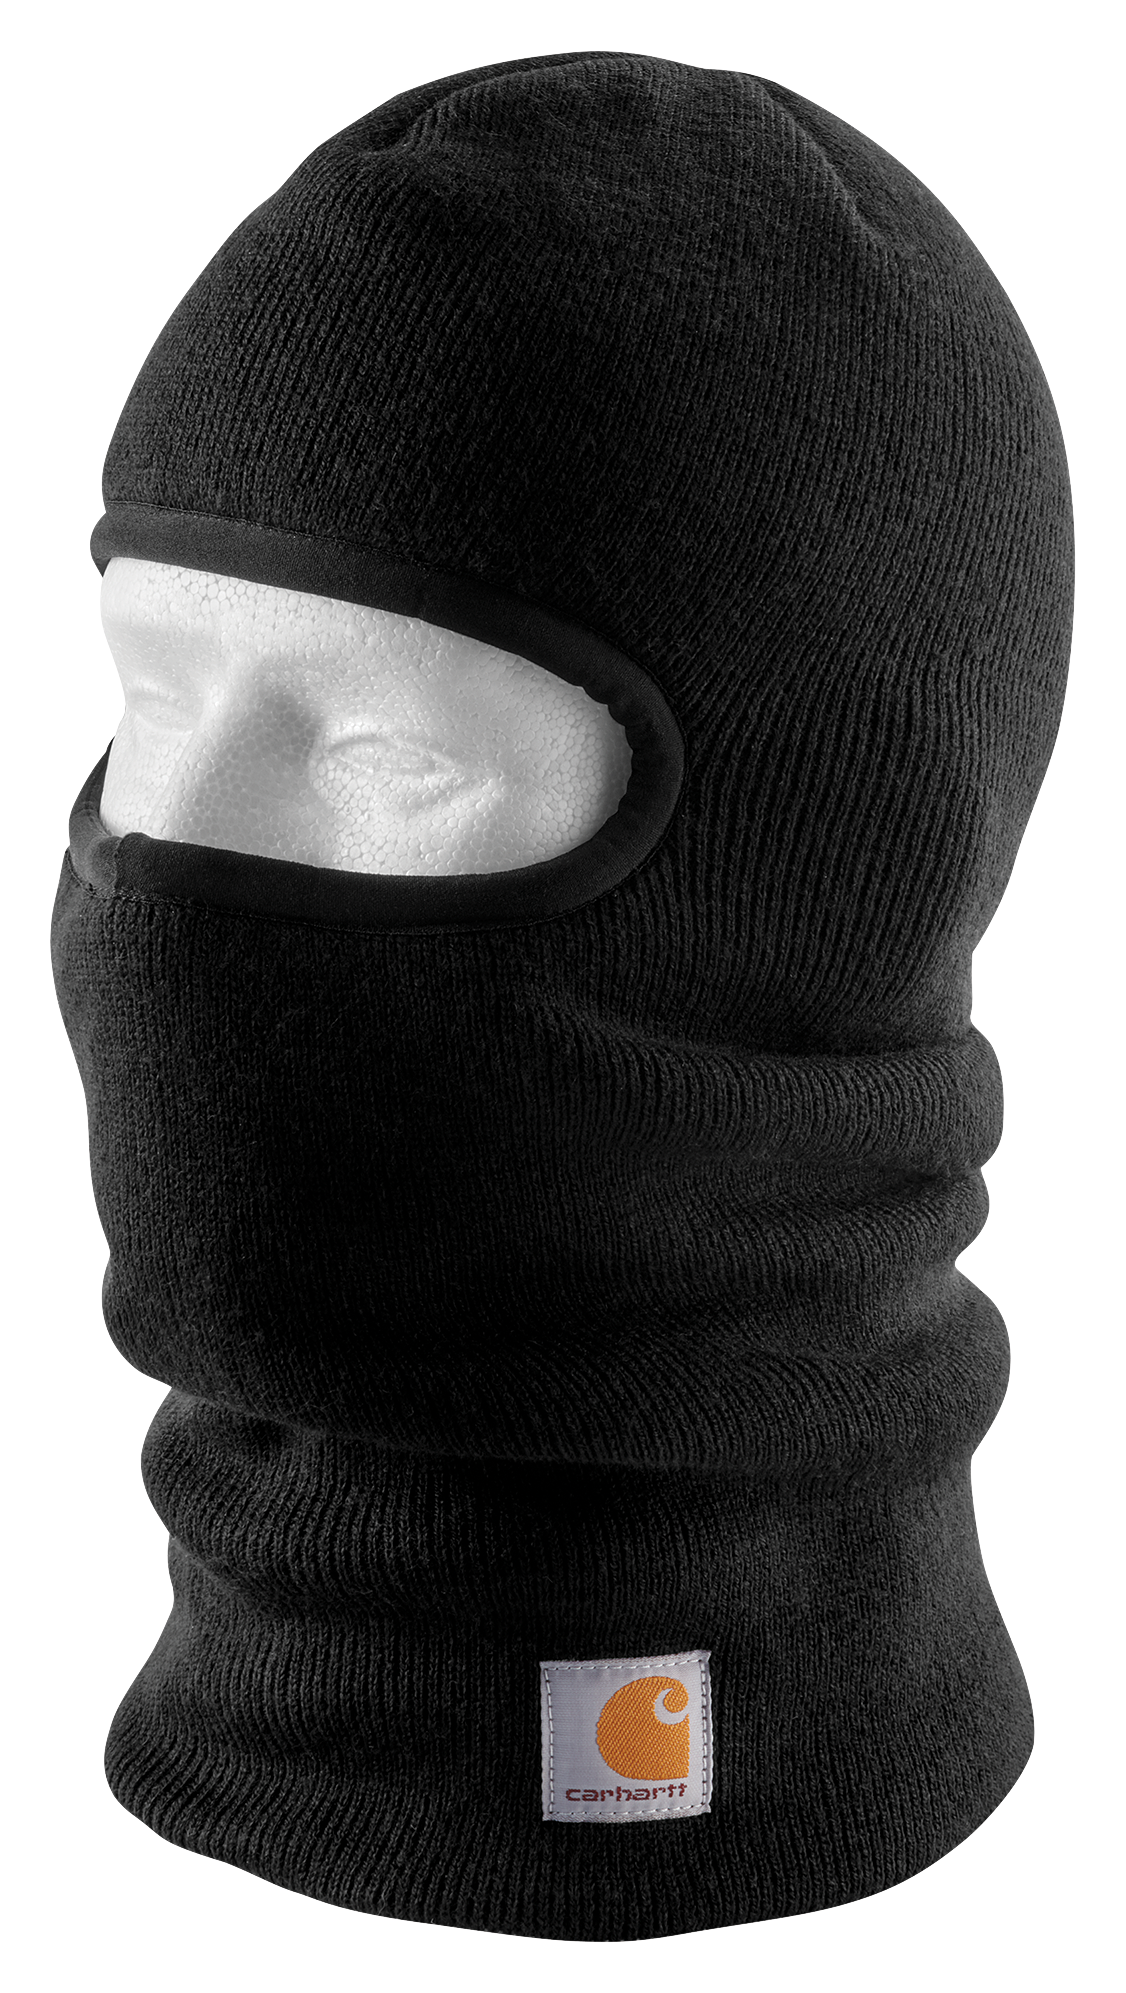 Ski Mask Embroidered Gun, Gun-embroidered Mask, Balaclava Gun Masks